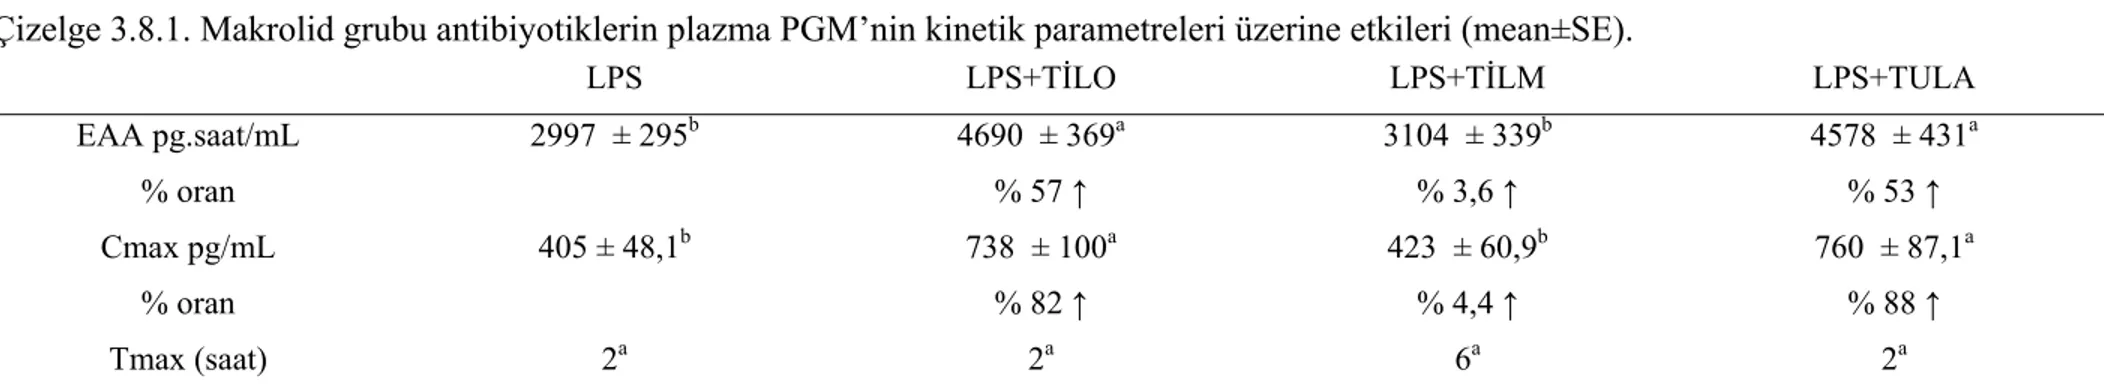 Çizelge 3.8.1. Makrolid grubu antibiyotiklerin plazma PGM’nin kinetik parametreleri üzerine etkileri (mean±SE)